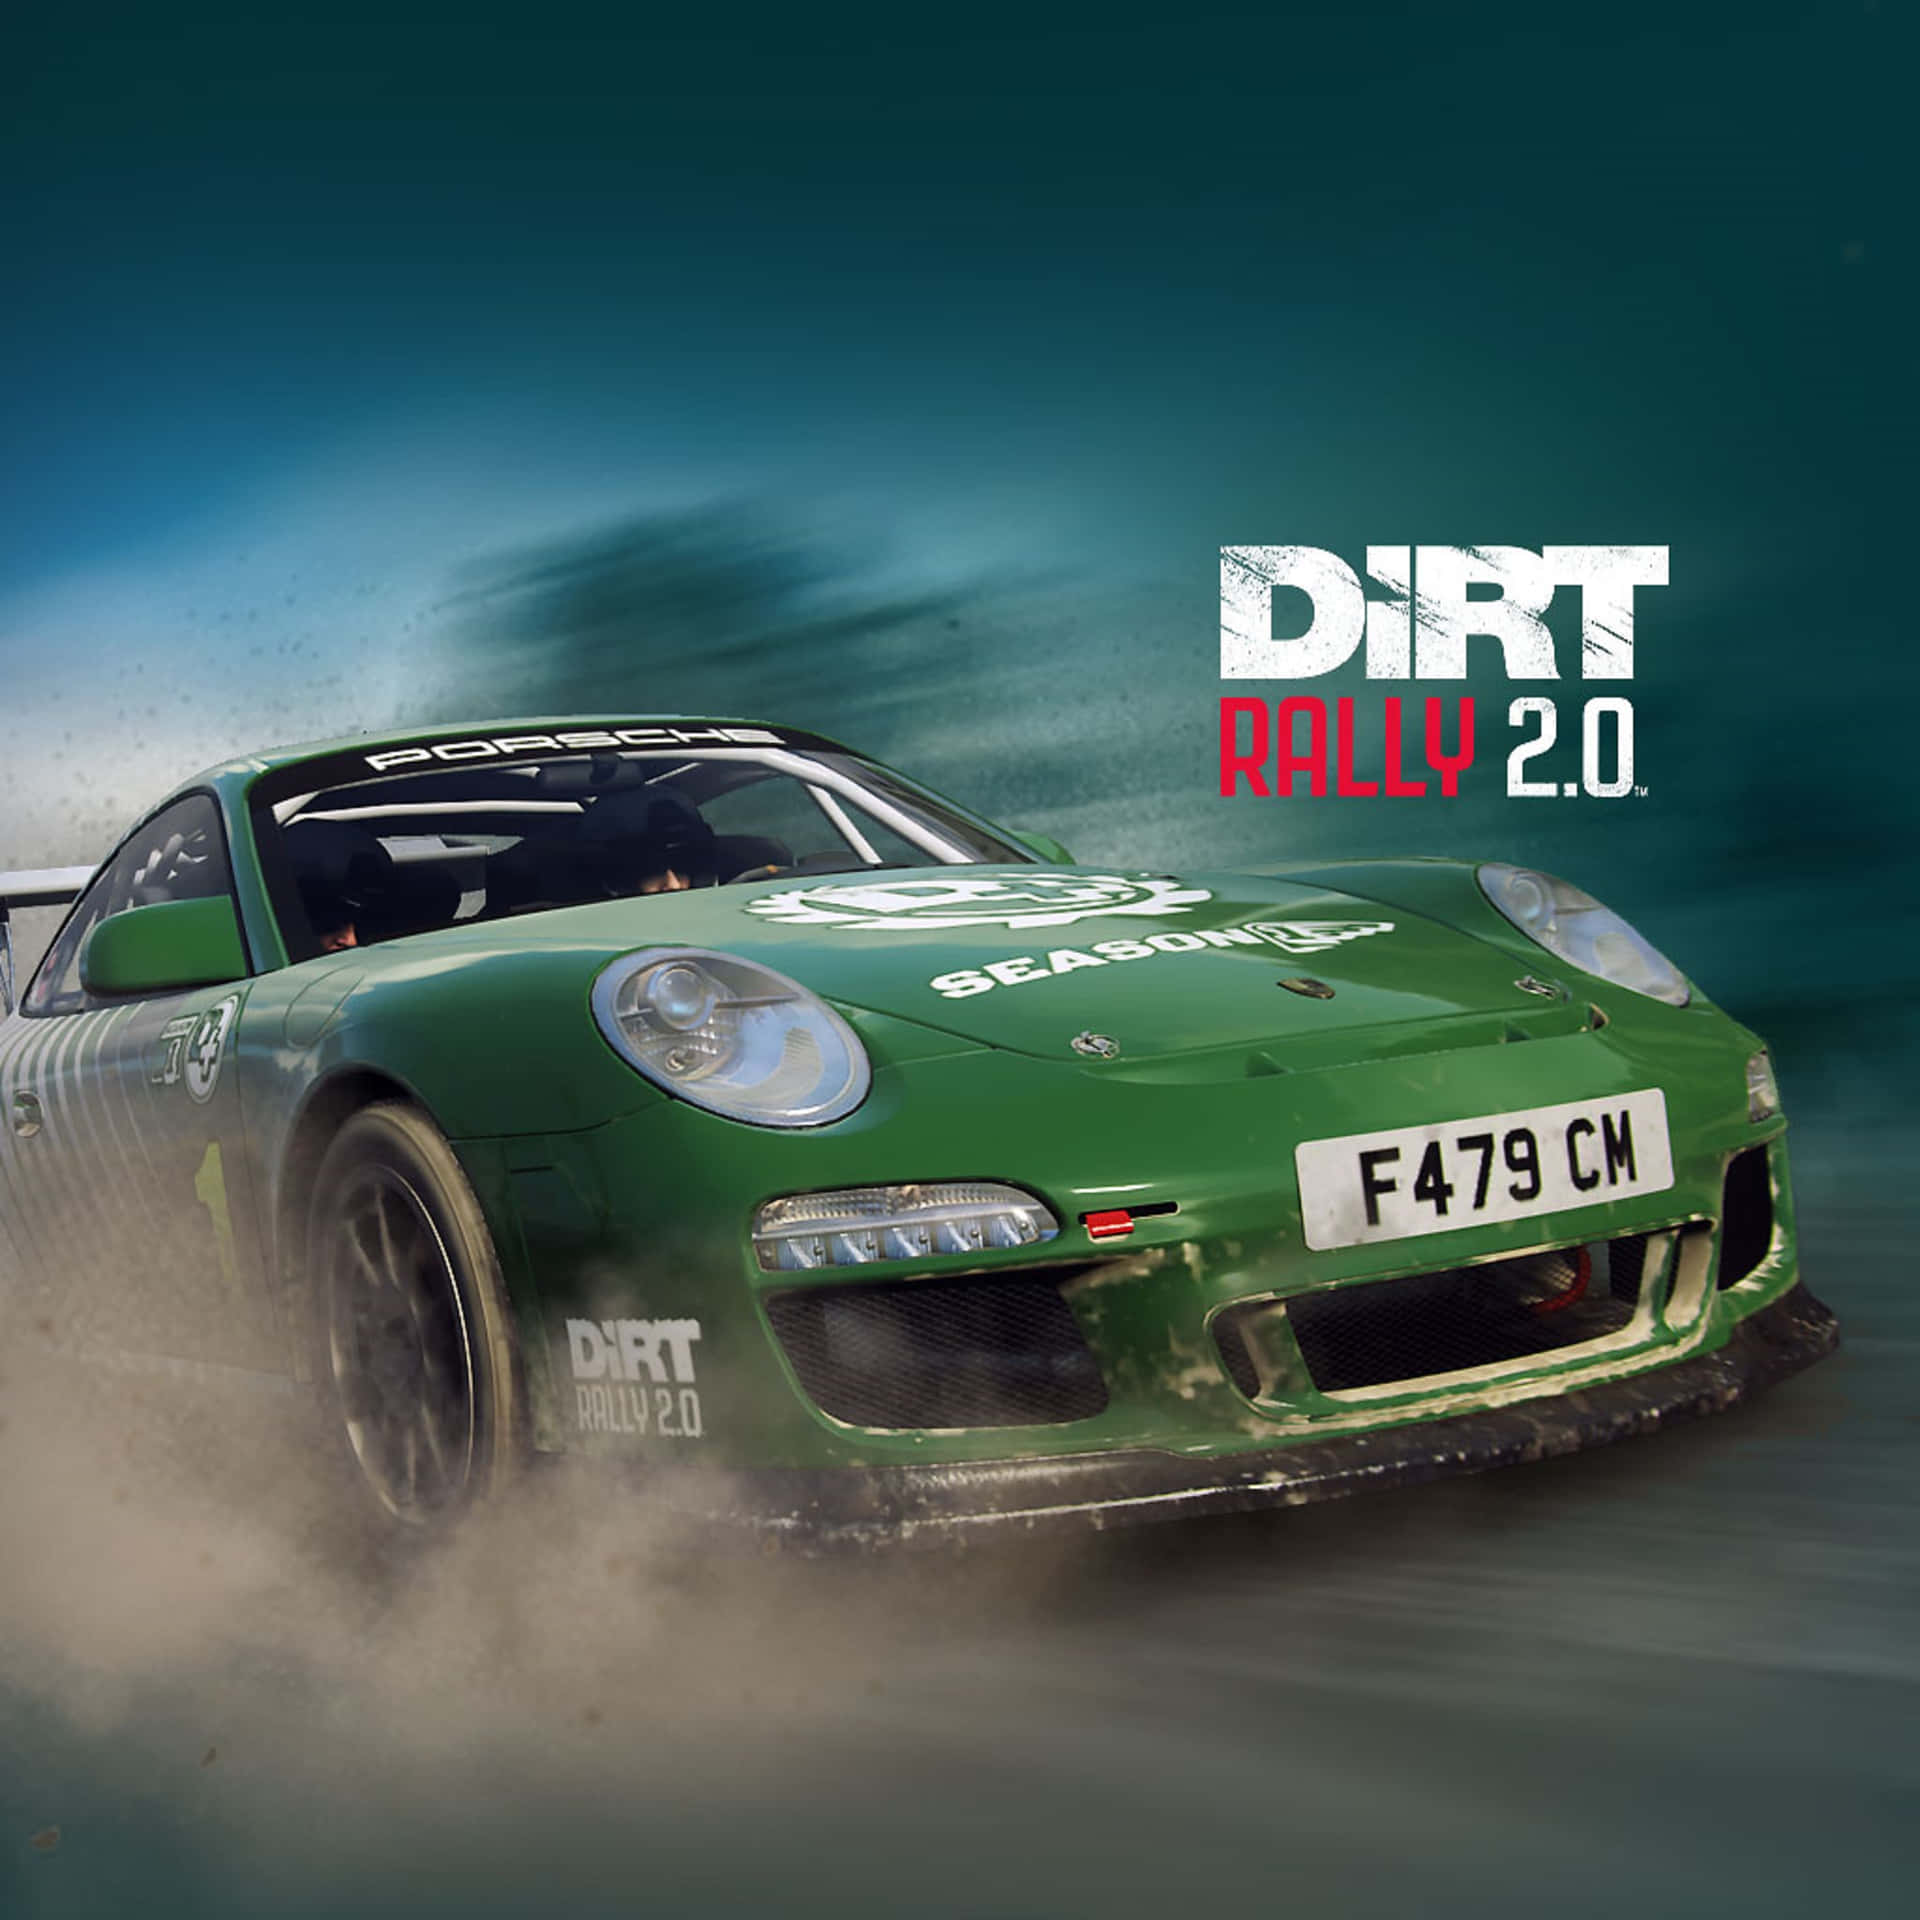 Grönporsche 911 - Bästa Dirt Rally-bakgrundsbilden.